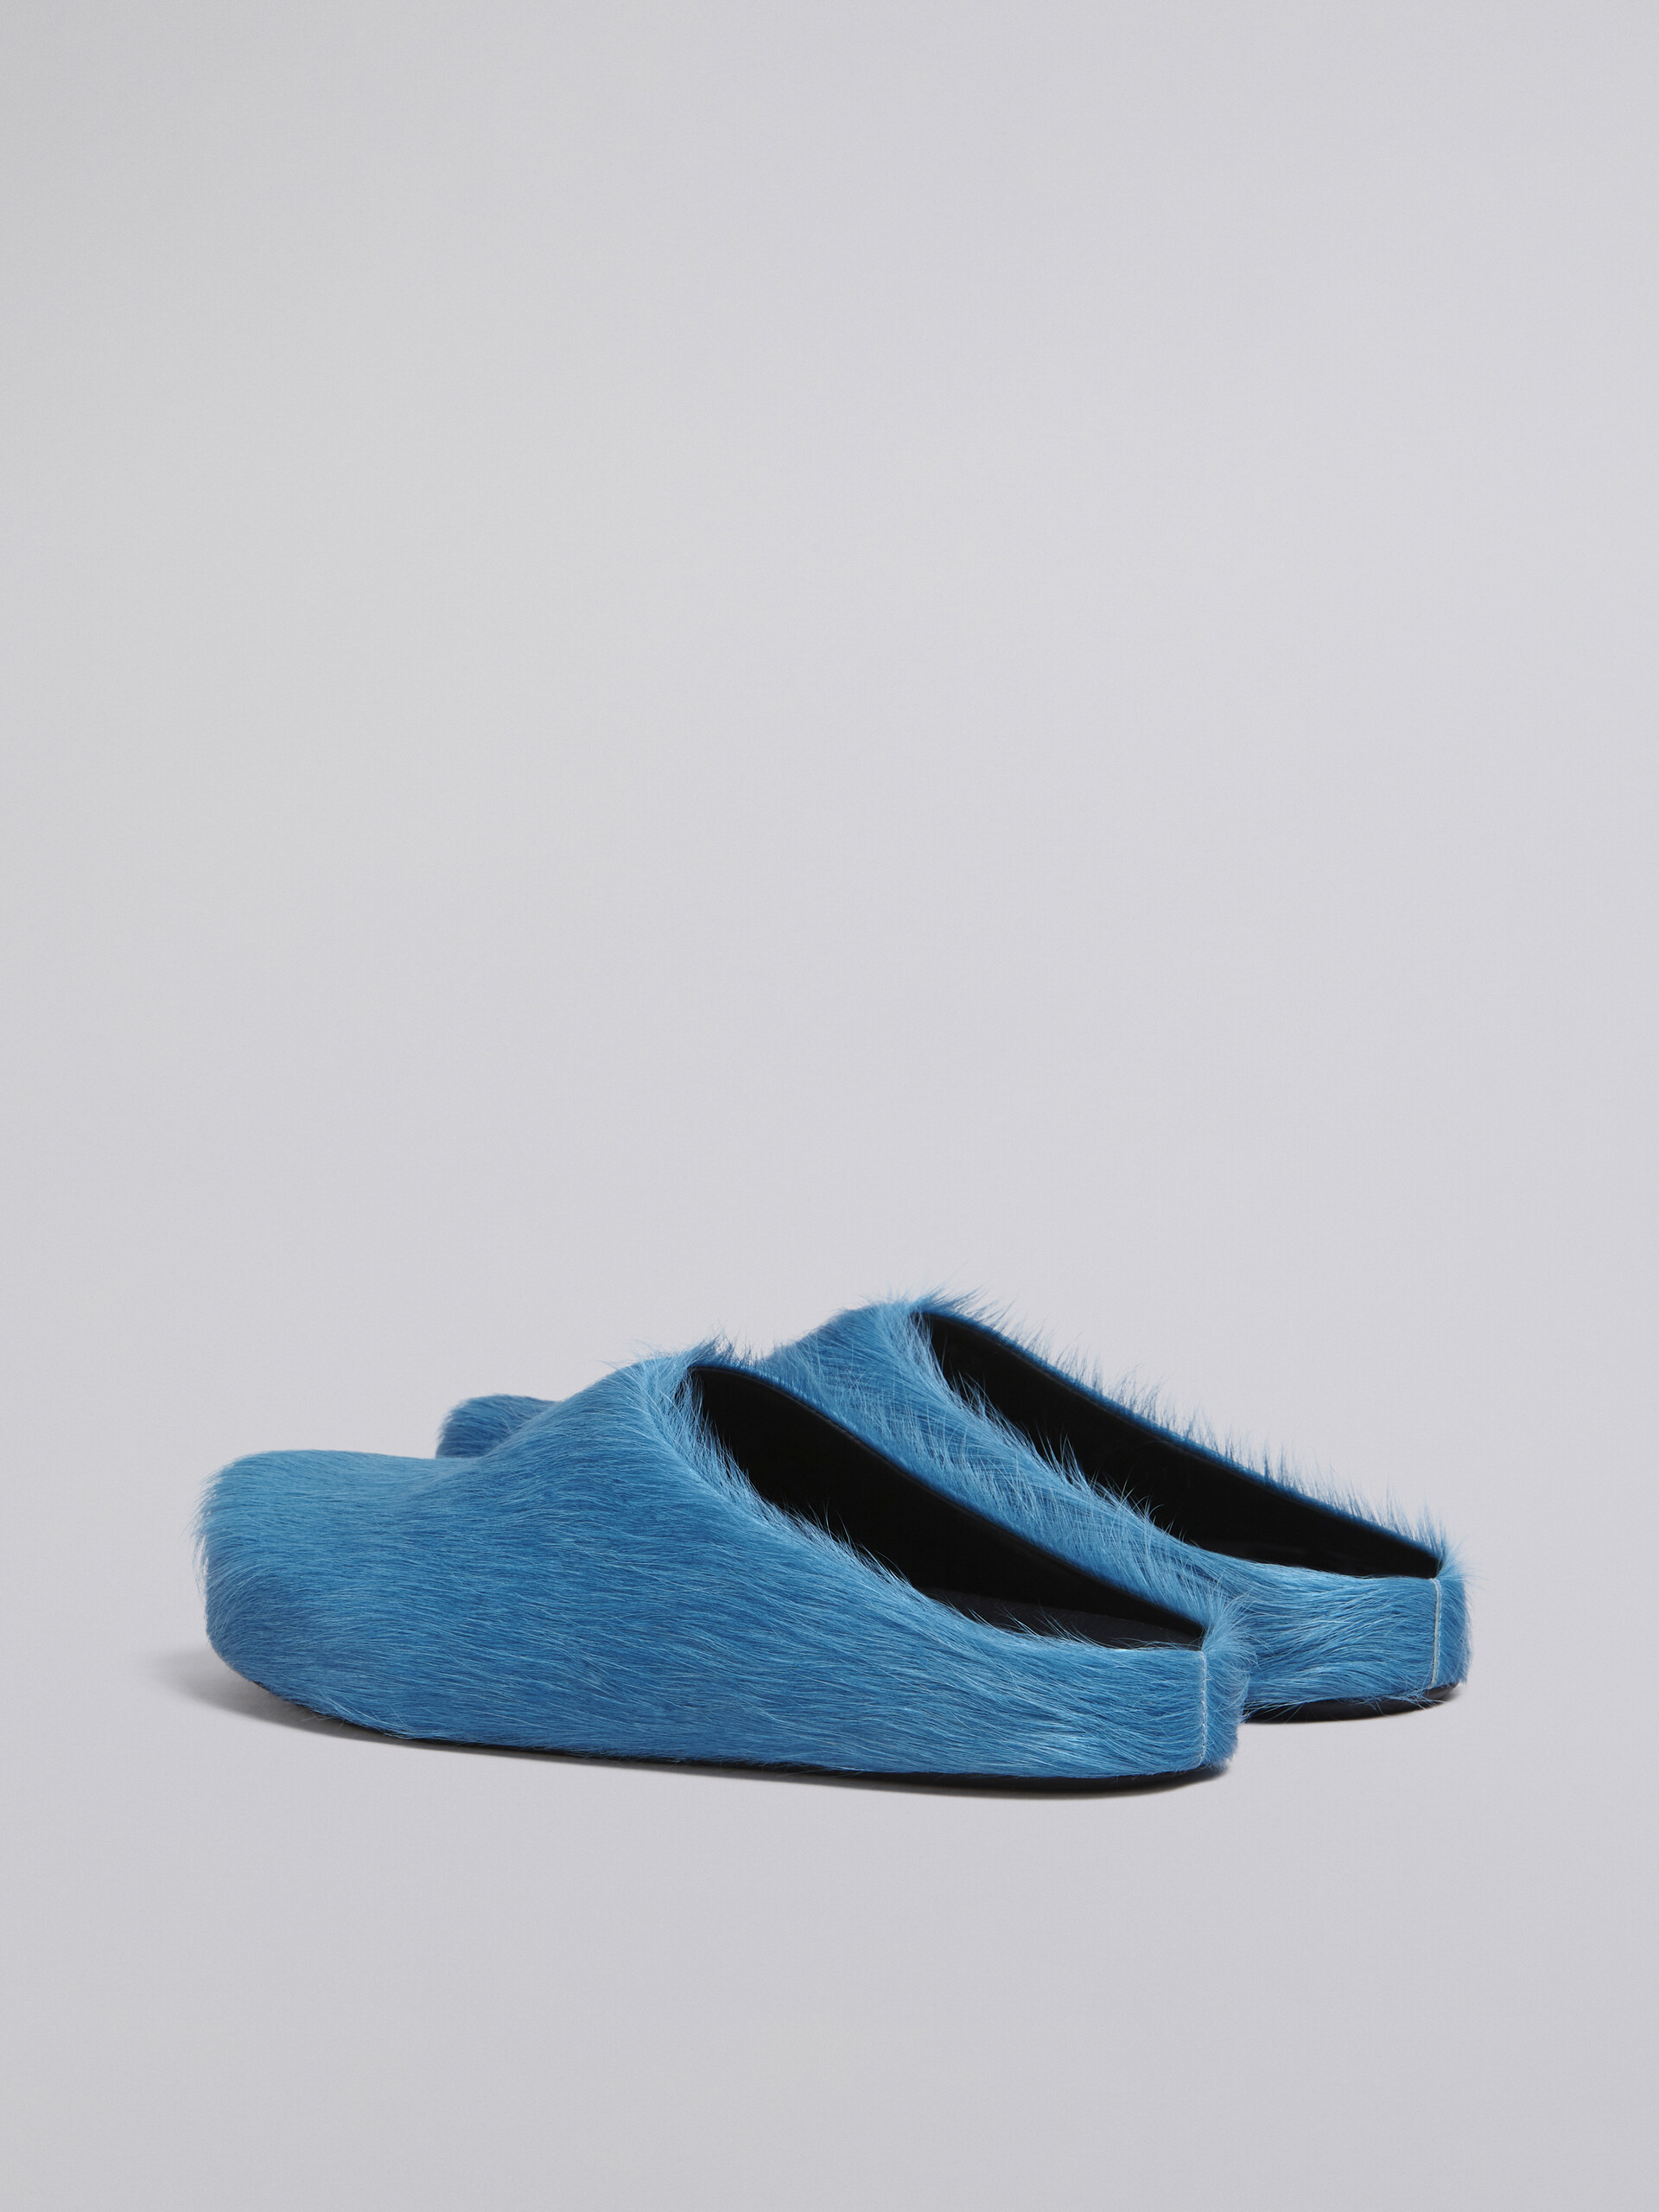 Hinten offener Loafer-Barfußschuh aus blauem Kalbsfell - Holzschuhe - Image 3